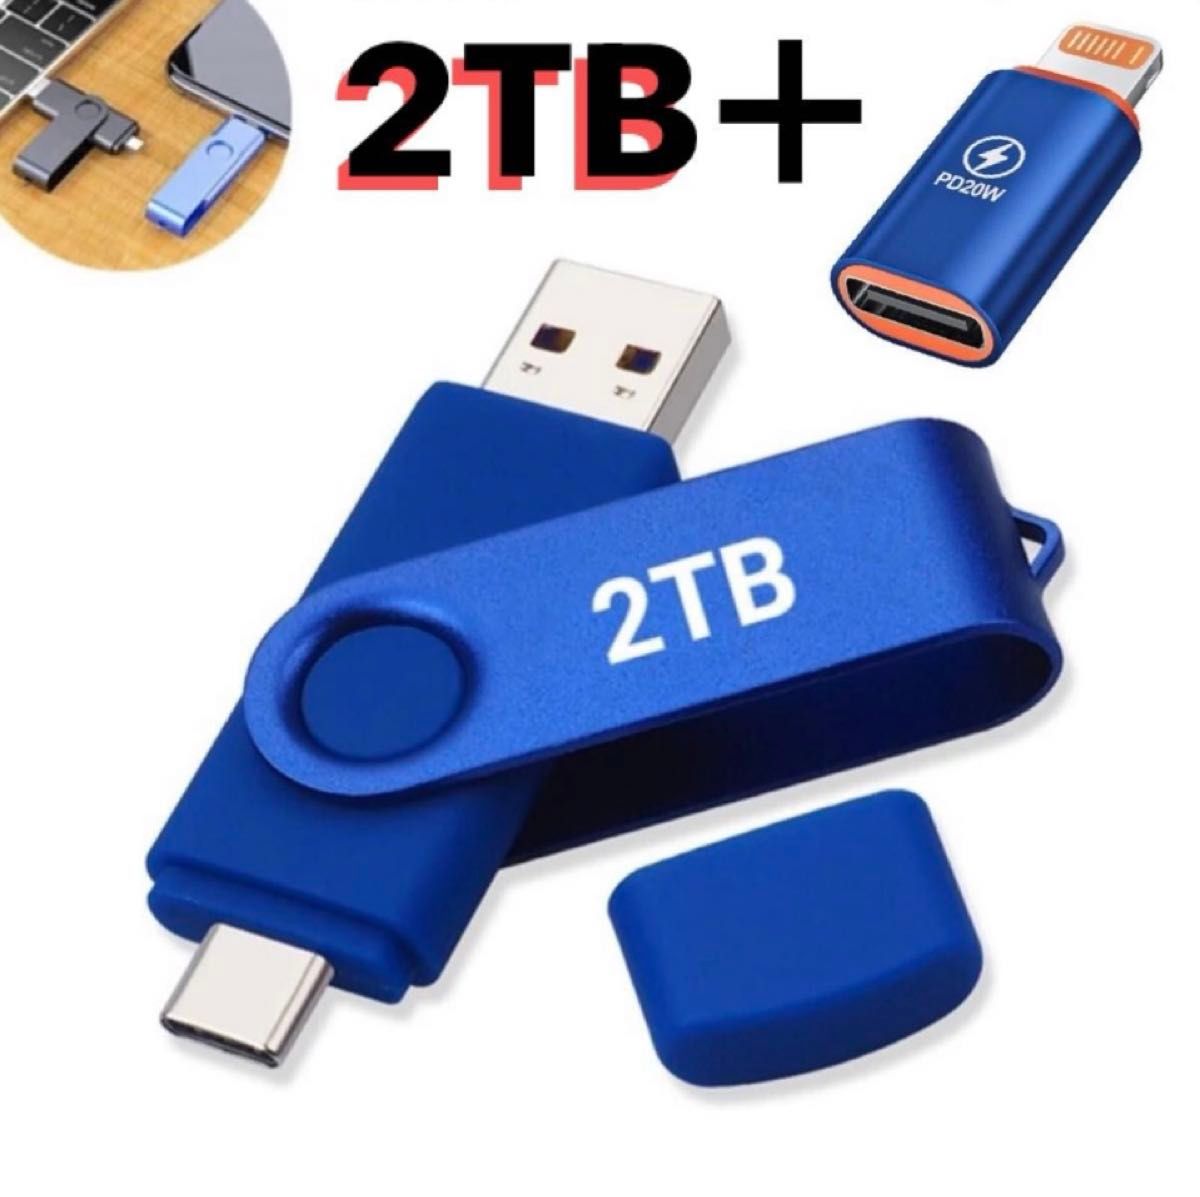 TYPE-C USB 高速メモリ ２TB 2in1 3.0 高速 iPhone5  USBアダプター　iPhone変換アダプター付